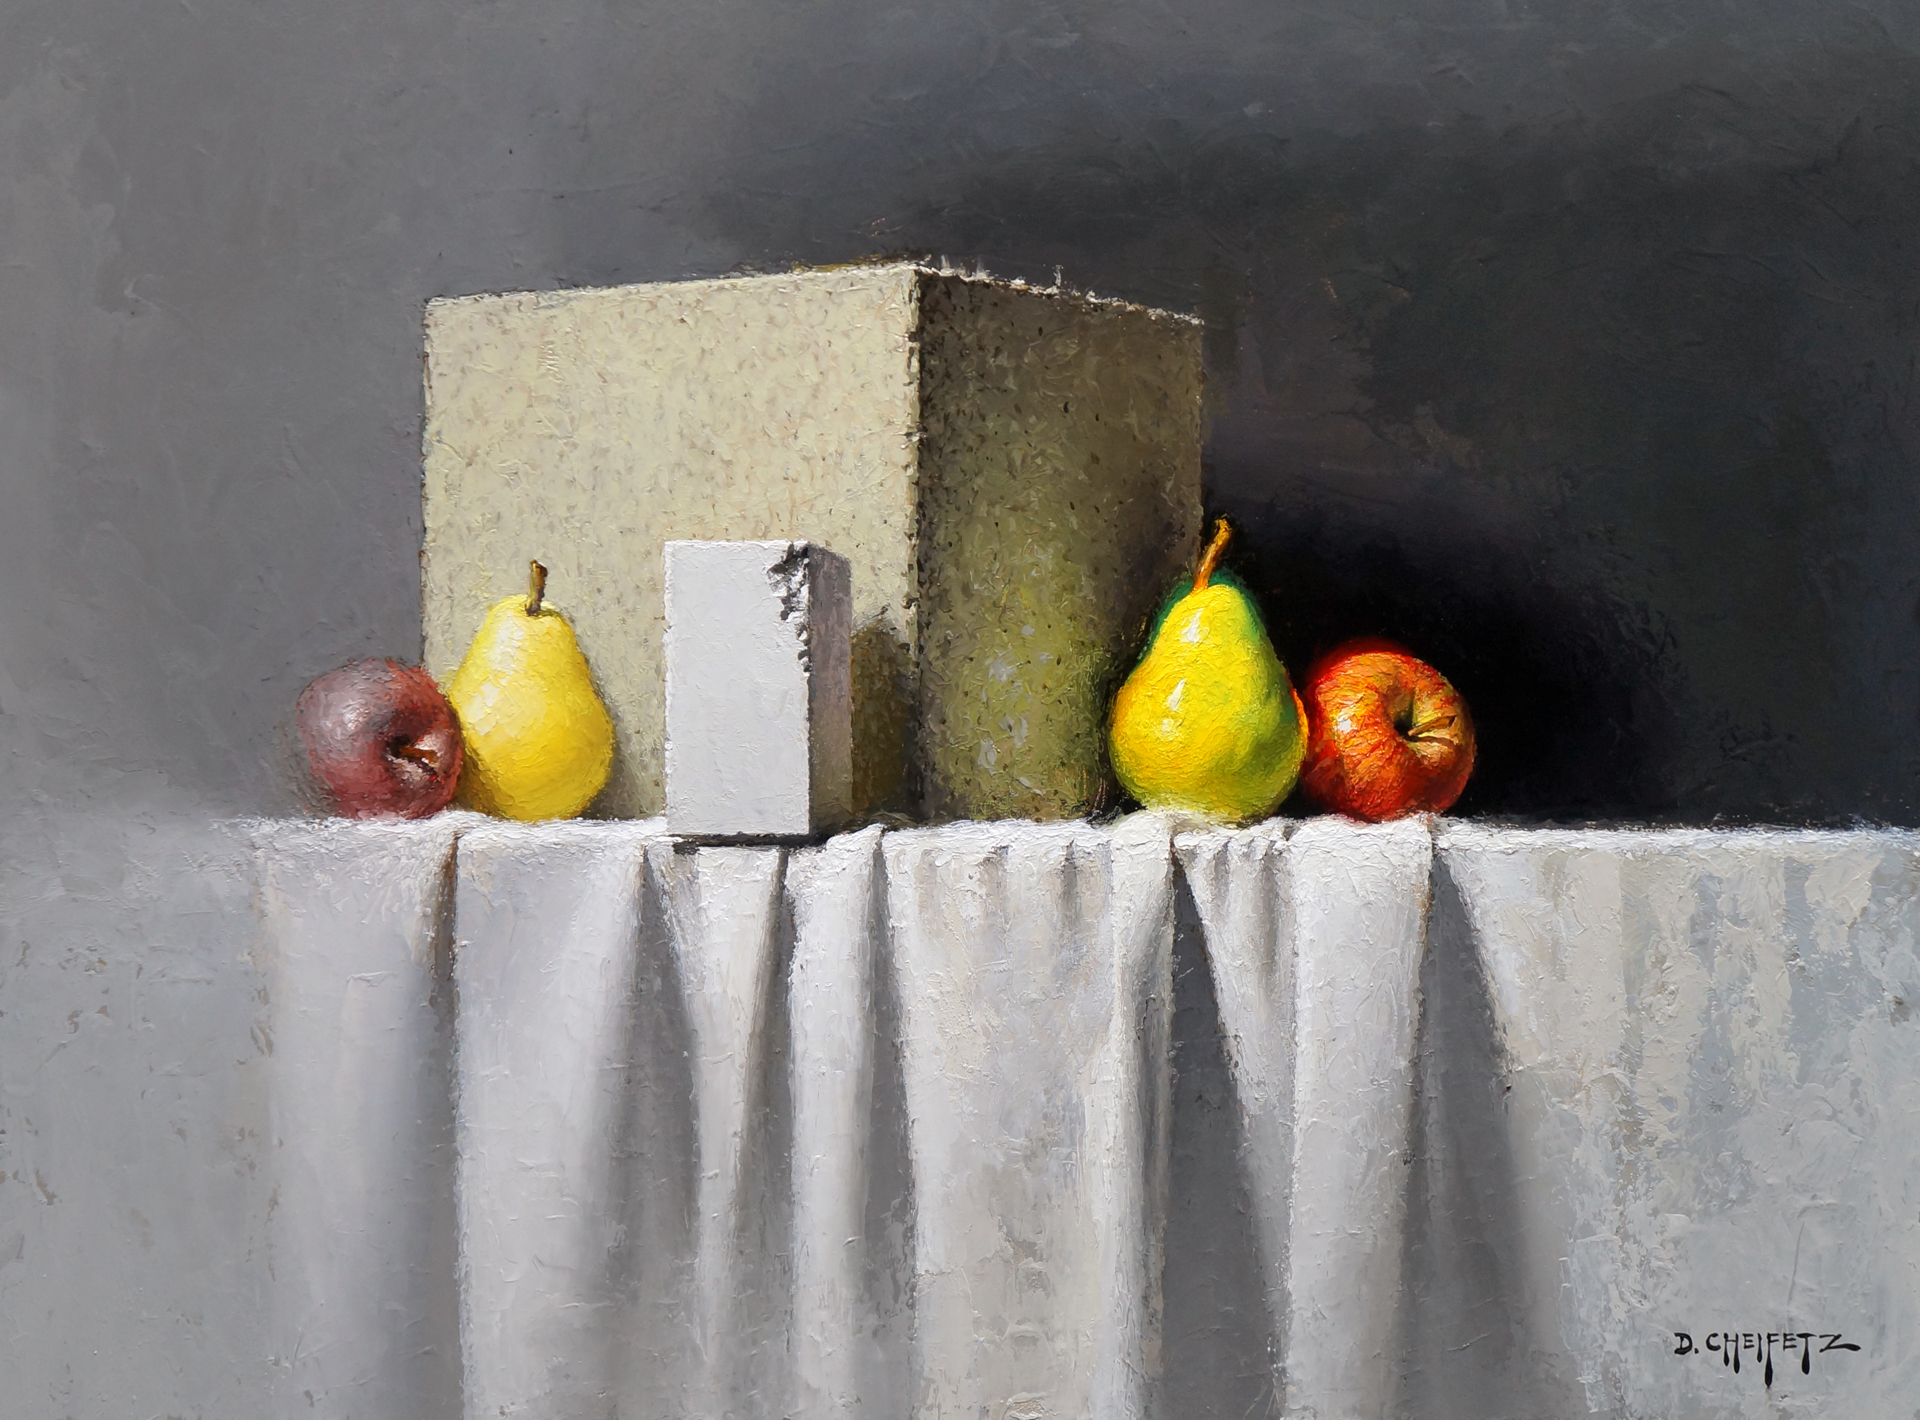 Chalk, Block, And Mirror by David Cheifetz